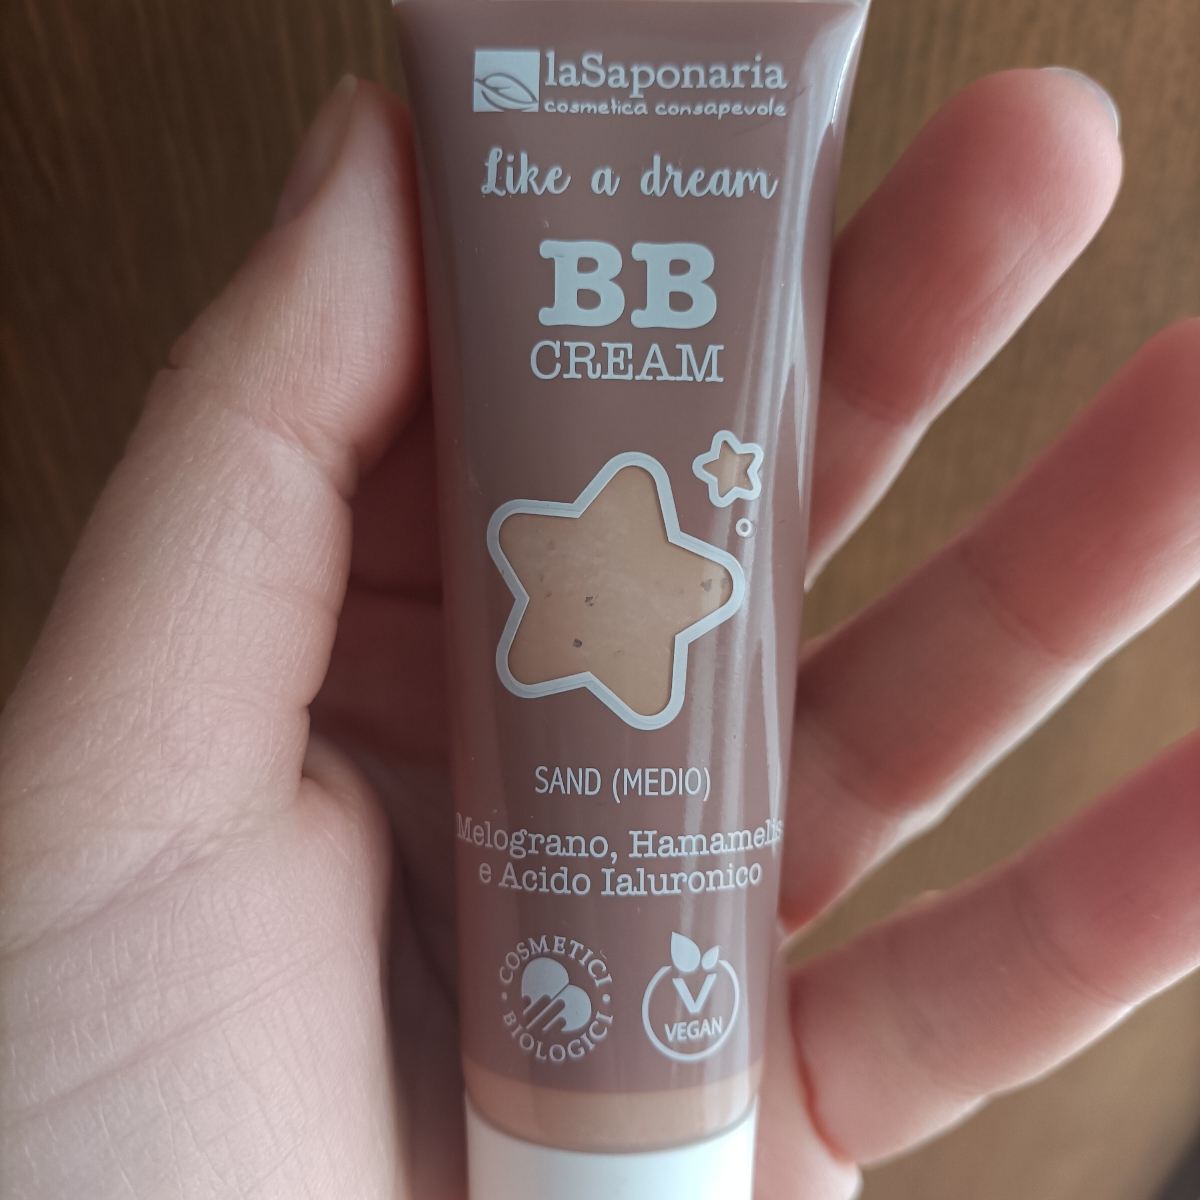 La Saponaria BB Cream Like a Dream Reviews | abillion